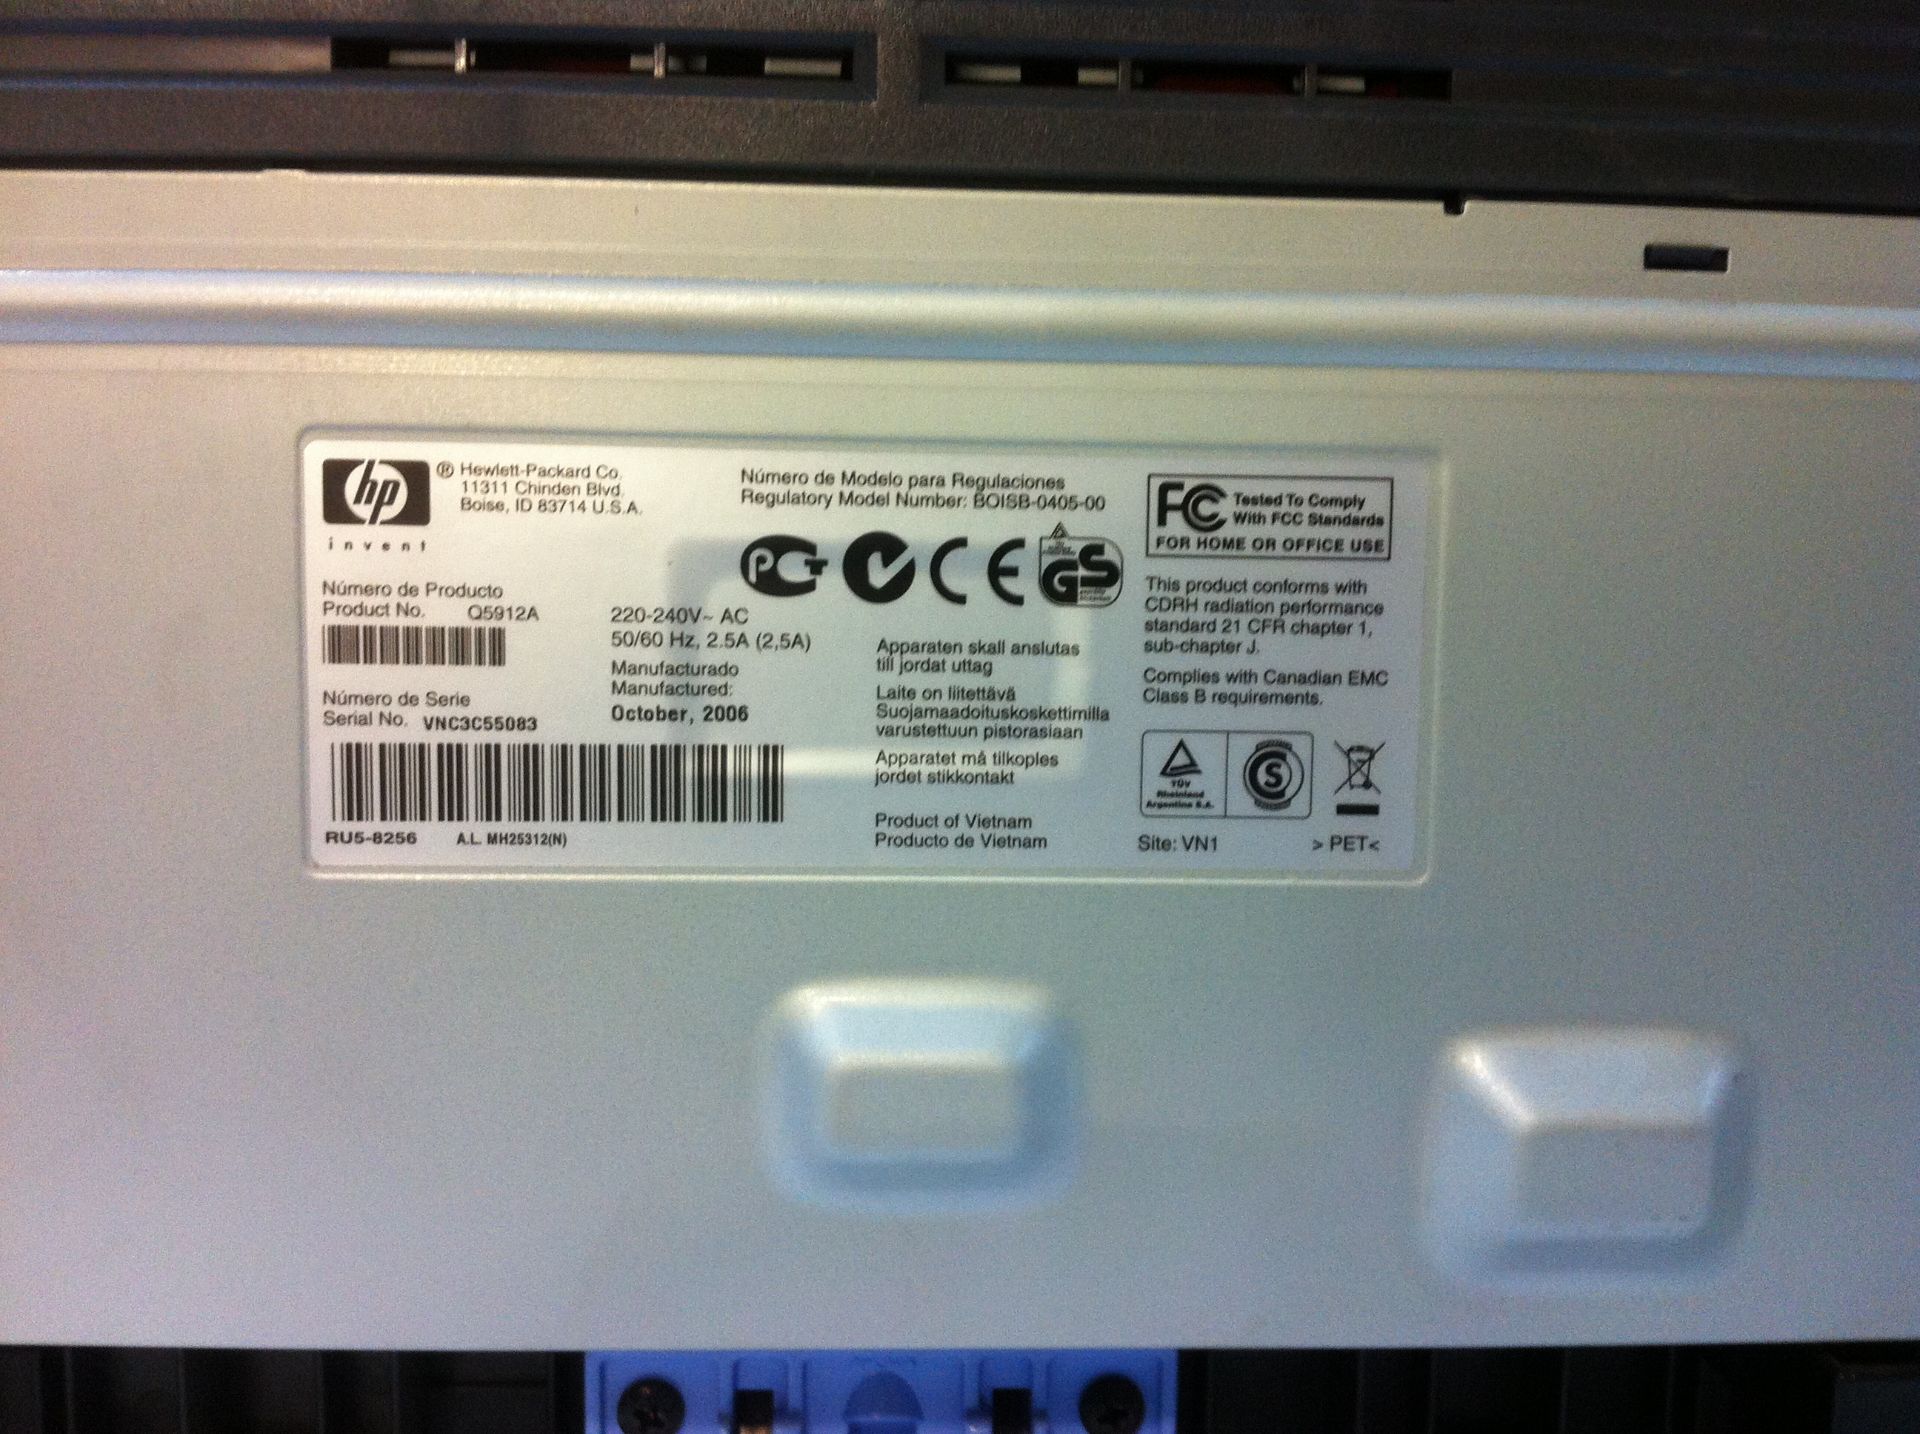 HP laserjet printer & Samsung fax machine - Bild 2 aus 2